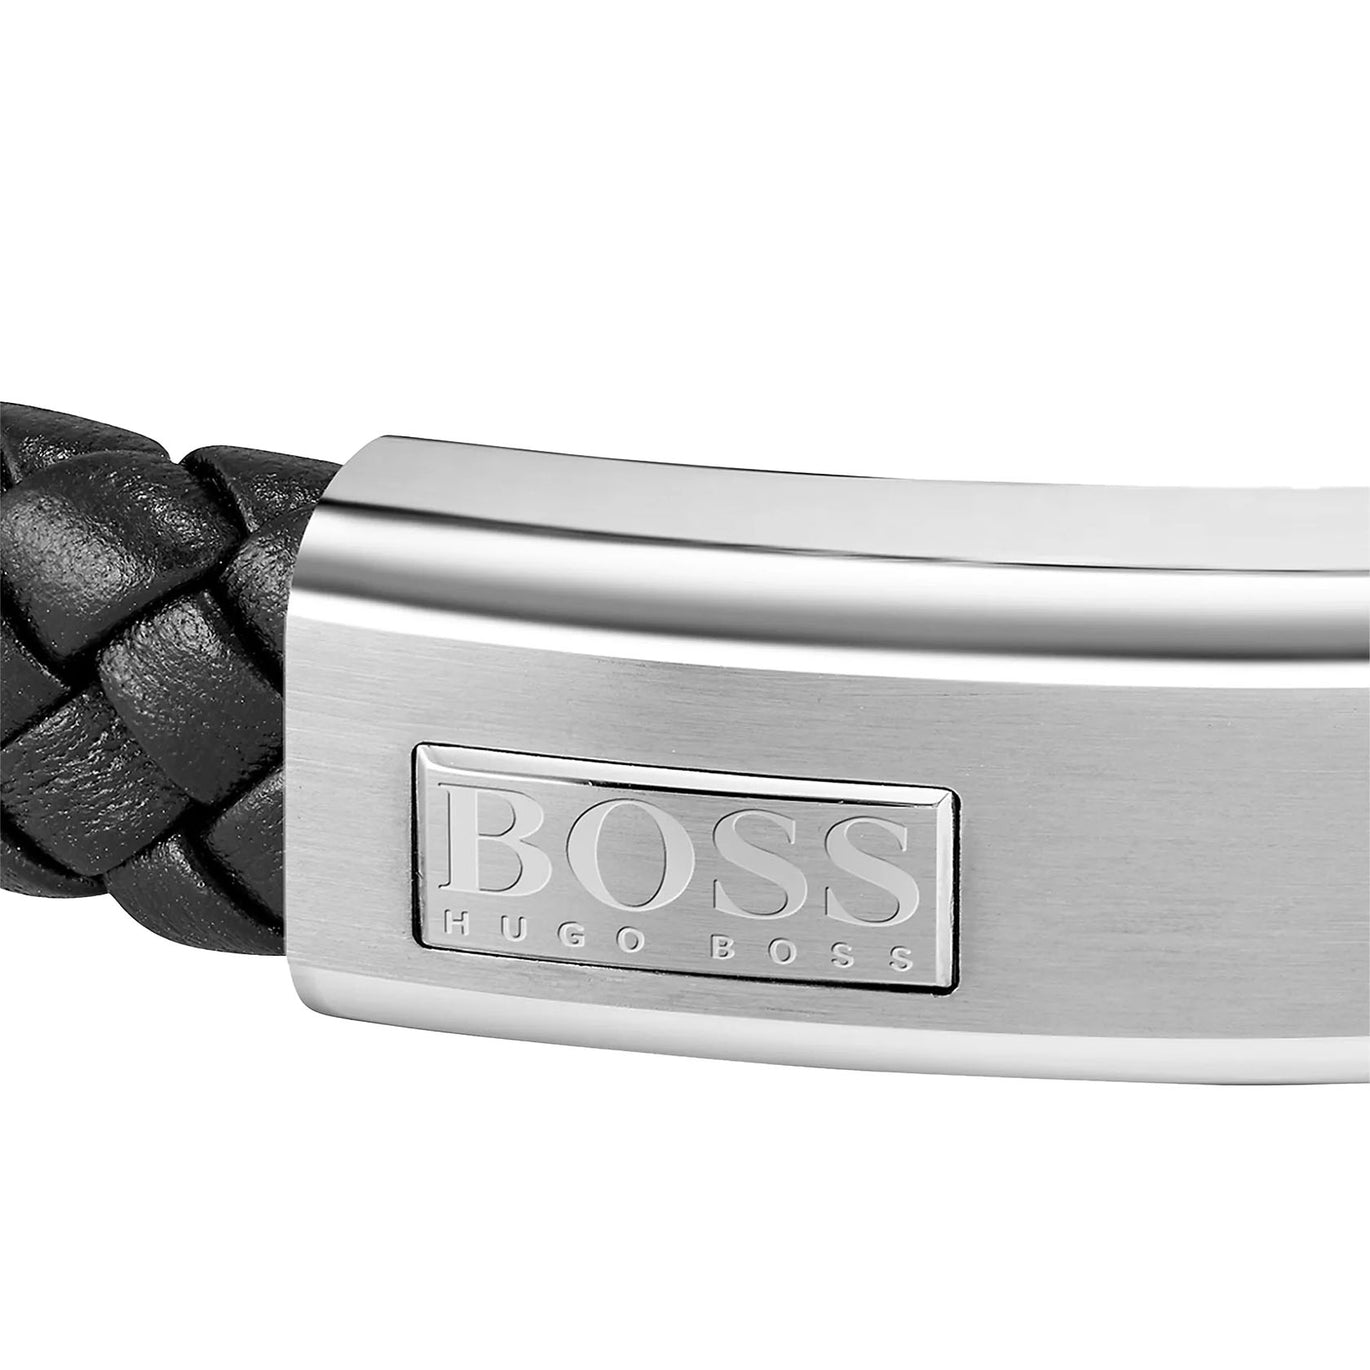 Boss Men's Lander Black Leather Bracelet